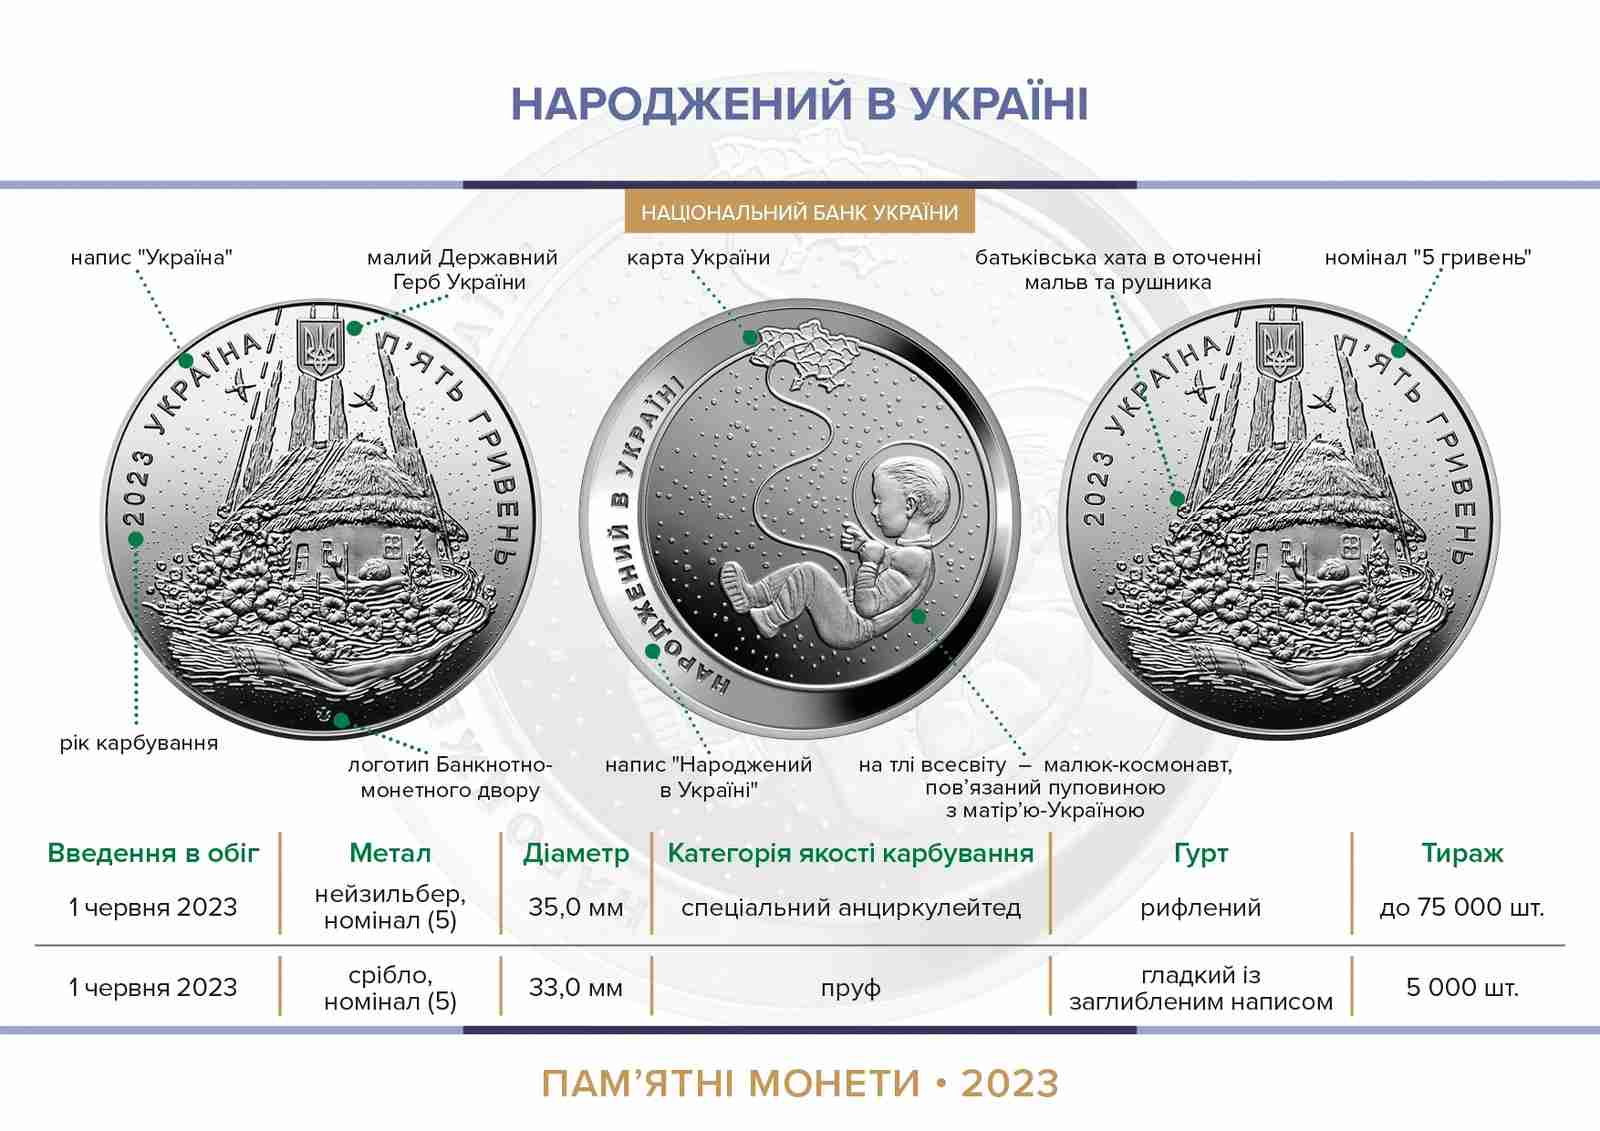 НБУ 1 червня ввів в обіг пам’ятні монети «Народжений в Україні» (ФОТО)